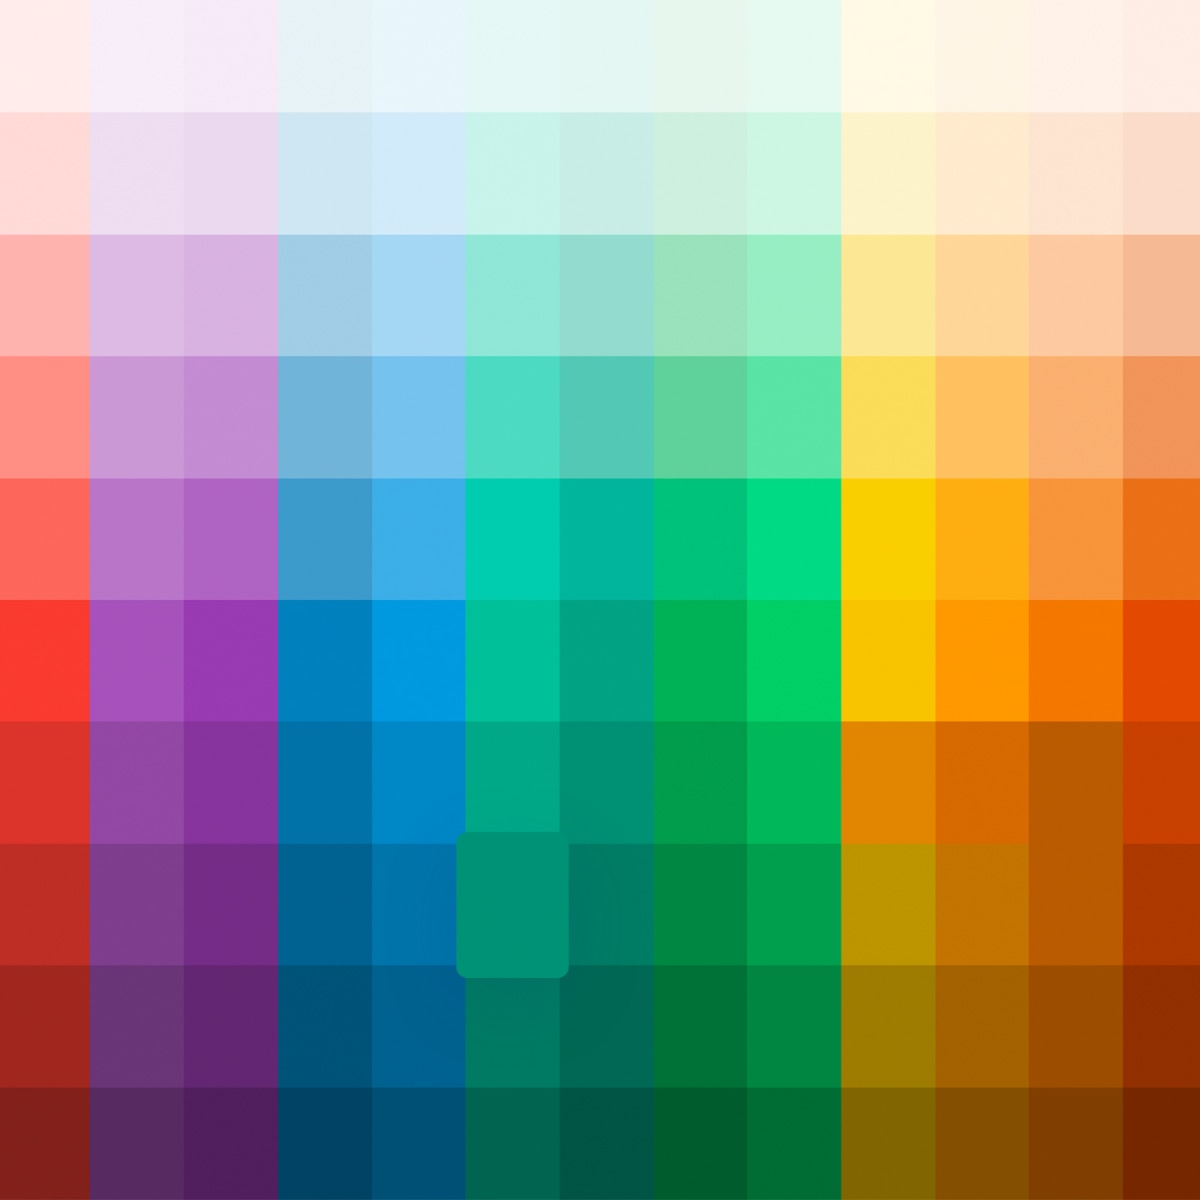 Color Palette Generator: Tự tạo gam màu cho thiết kế của bạn với Color Palette Generator. Điều này giúp cho việc phát triển một thuật toán màu sắc đẹp đơn giản và nhanh chóng. Tìm kiếm nhiều gam màu đẹp nhất cho bất kỳ dự án trực tuyến nào của bạn và cảm thấy thích thú với sức sáng tạo của bạn.